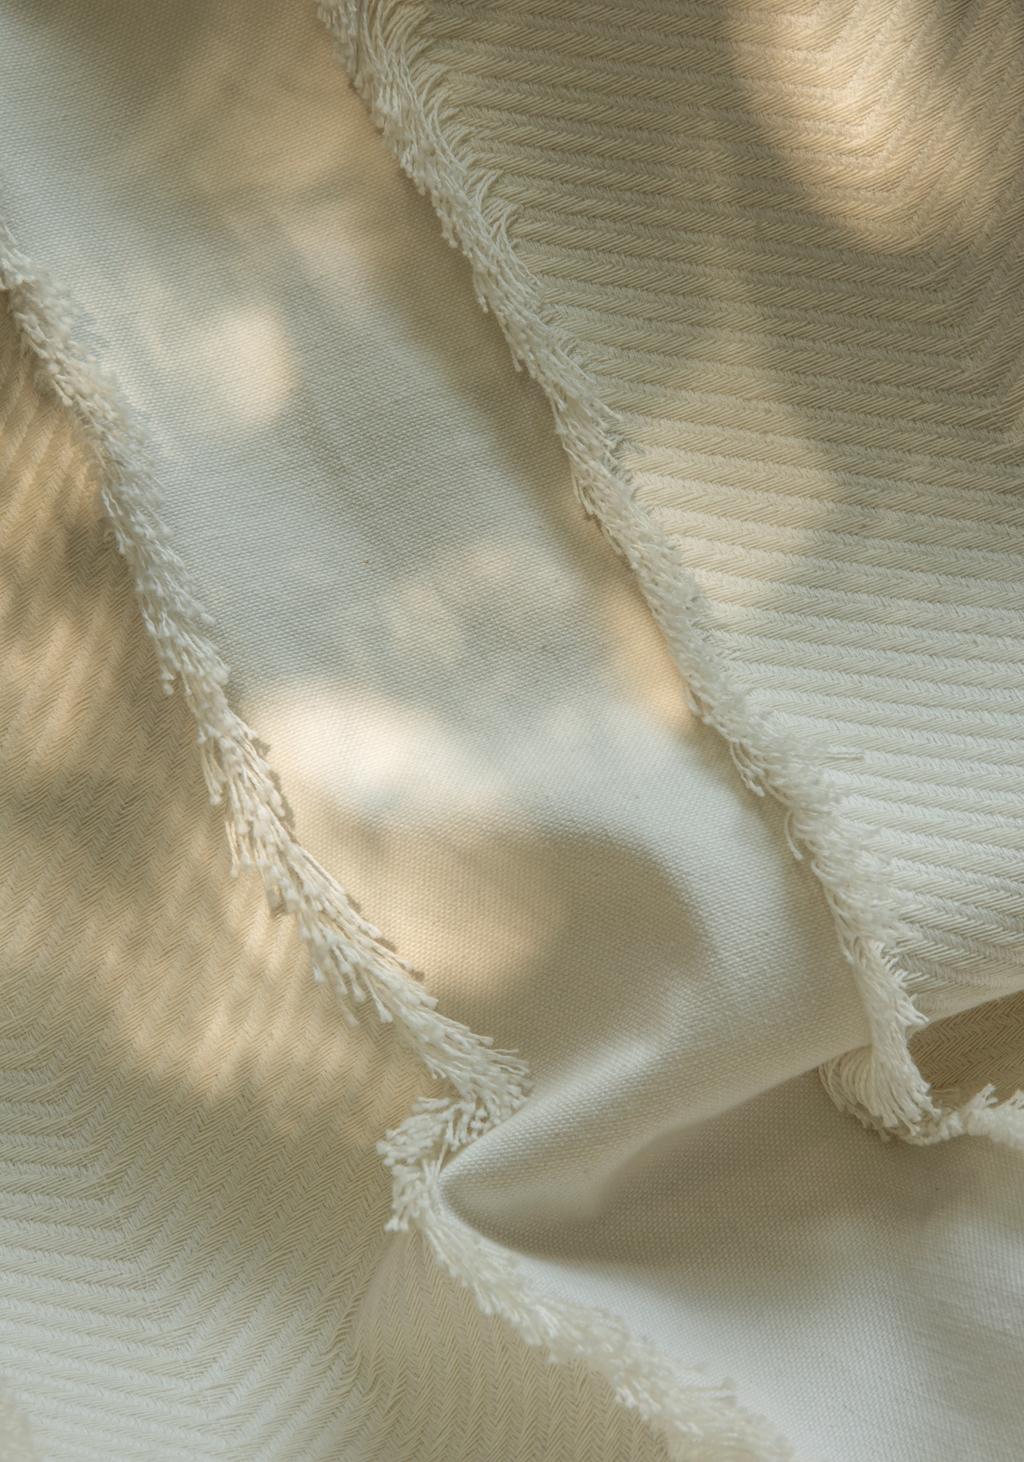 ALGODÃO O algodão tem alto poder de absorção de umidade, permitindo que a pele respire livremente quando em contato com ele.